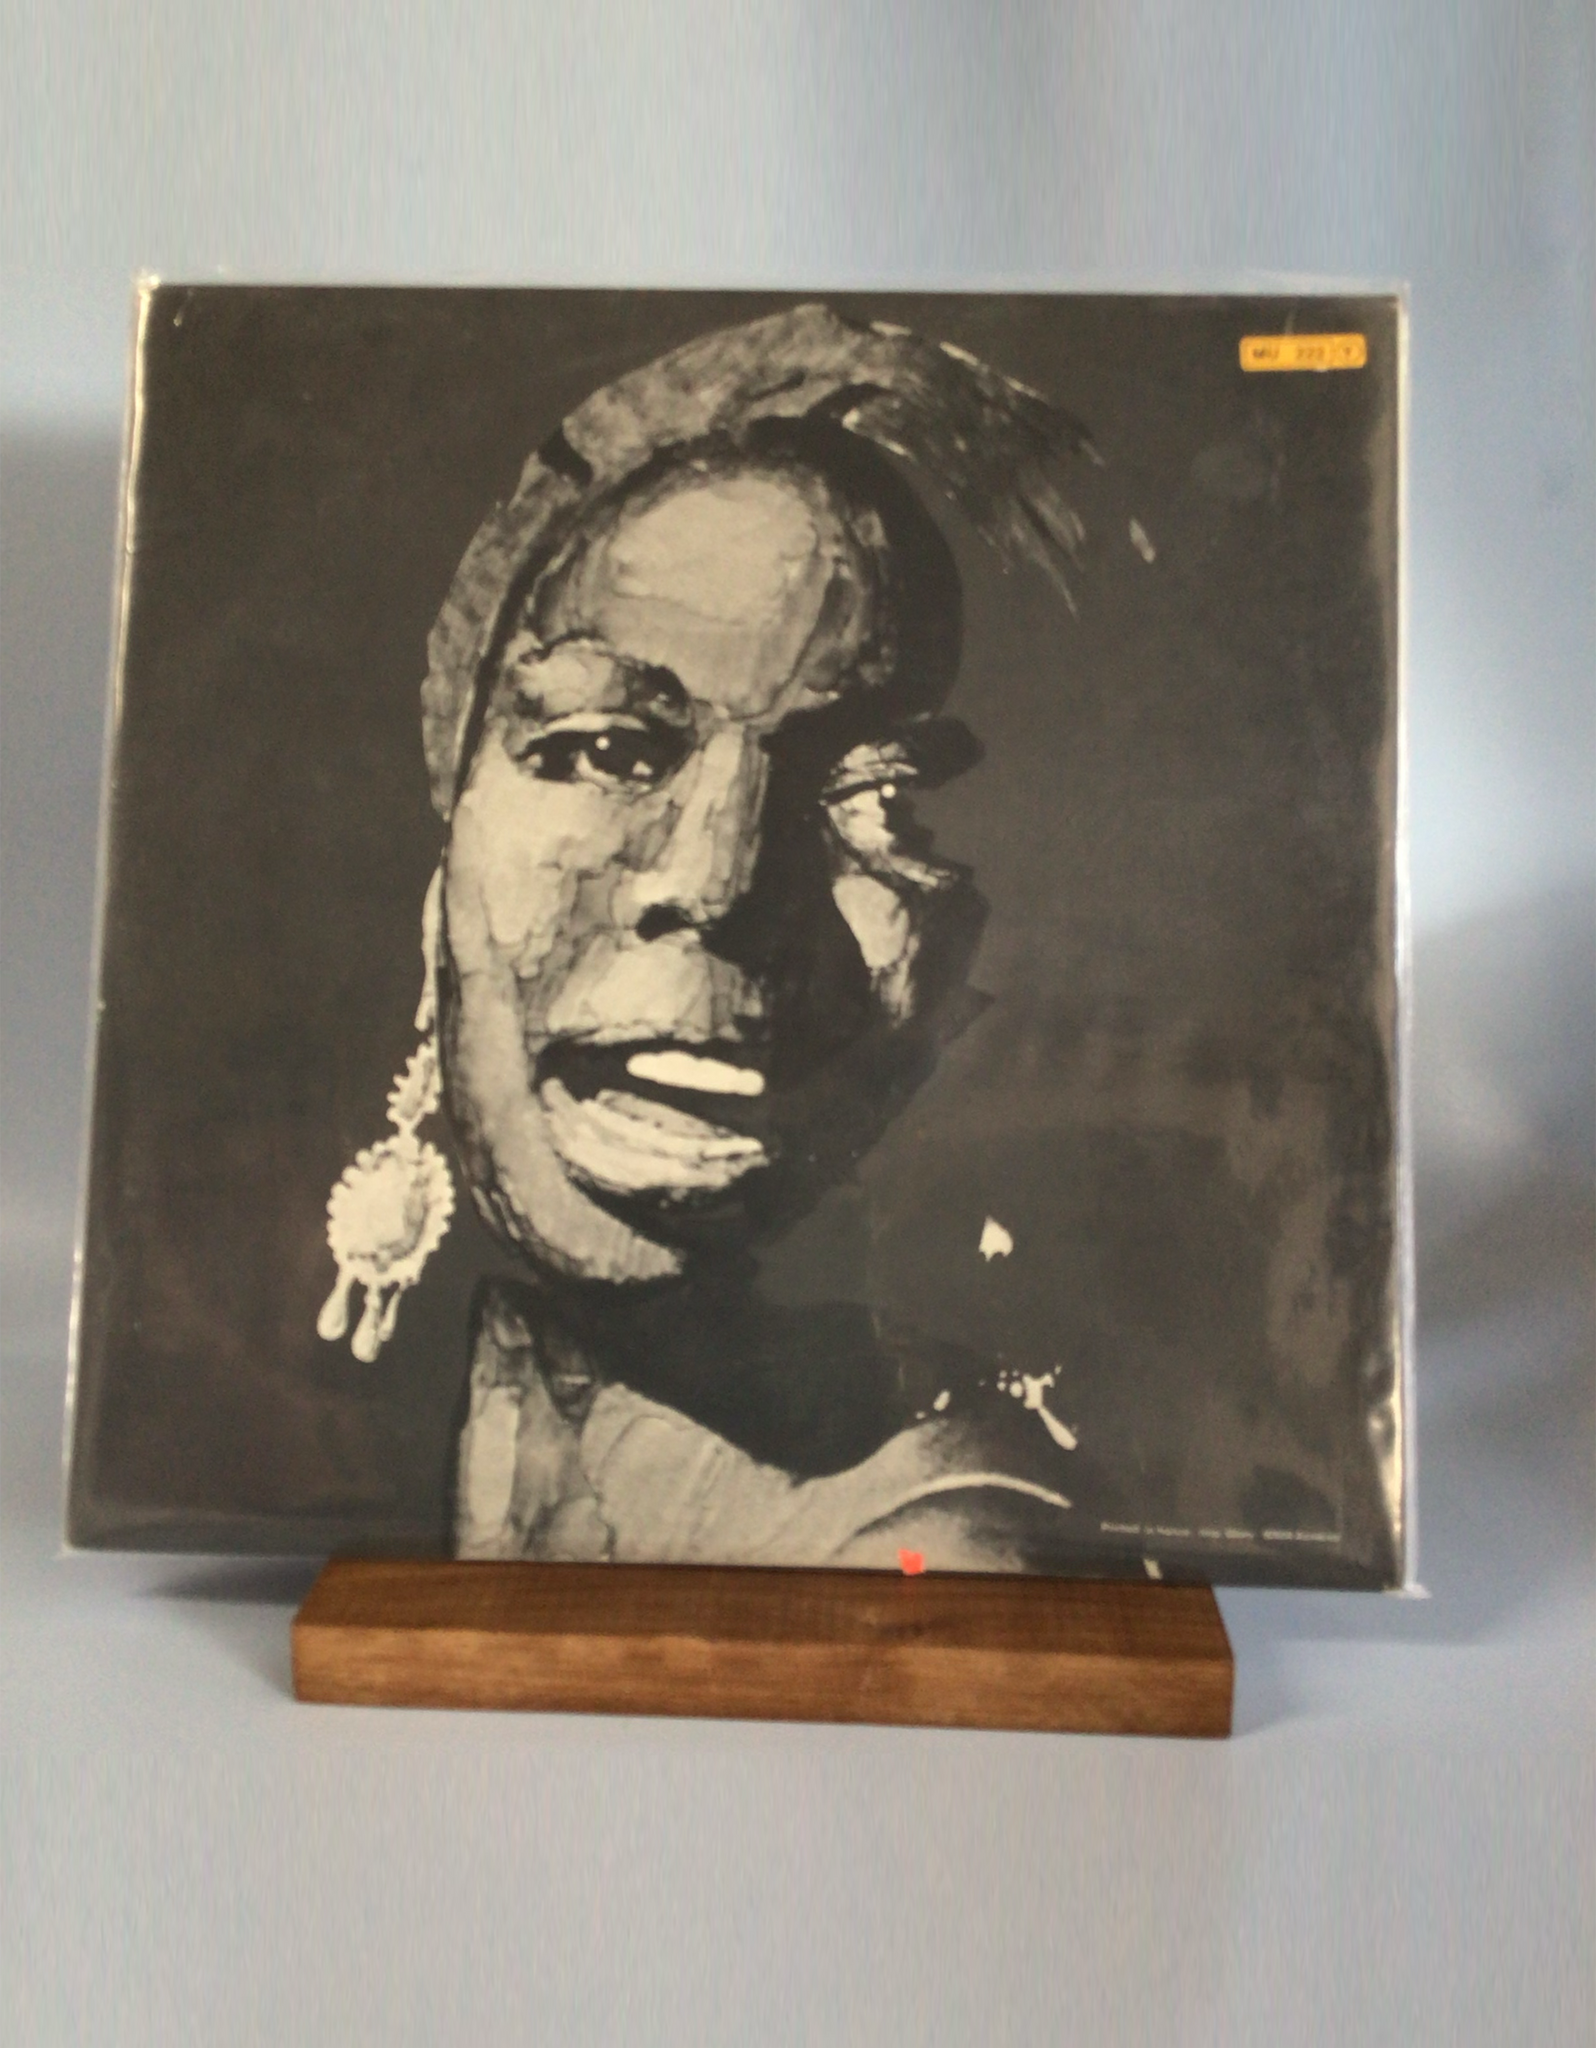 Nina Simone - The Great Show Live in Paris 1975 - Disques Fest Album 167 NM 2xLP